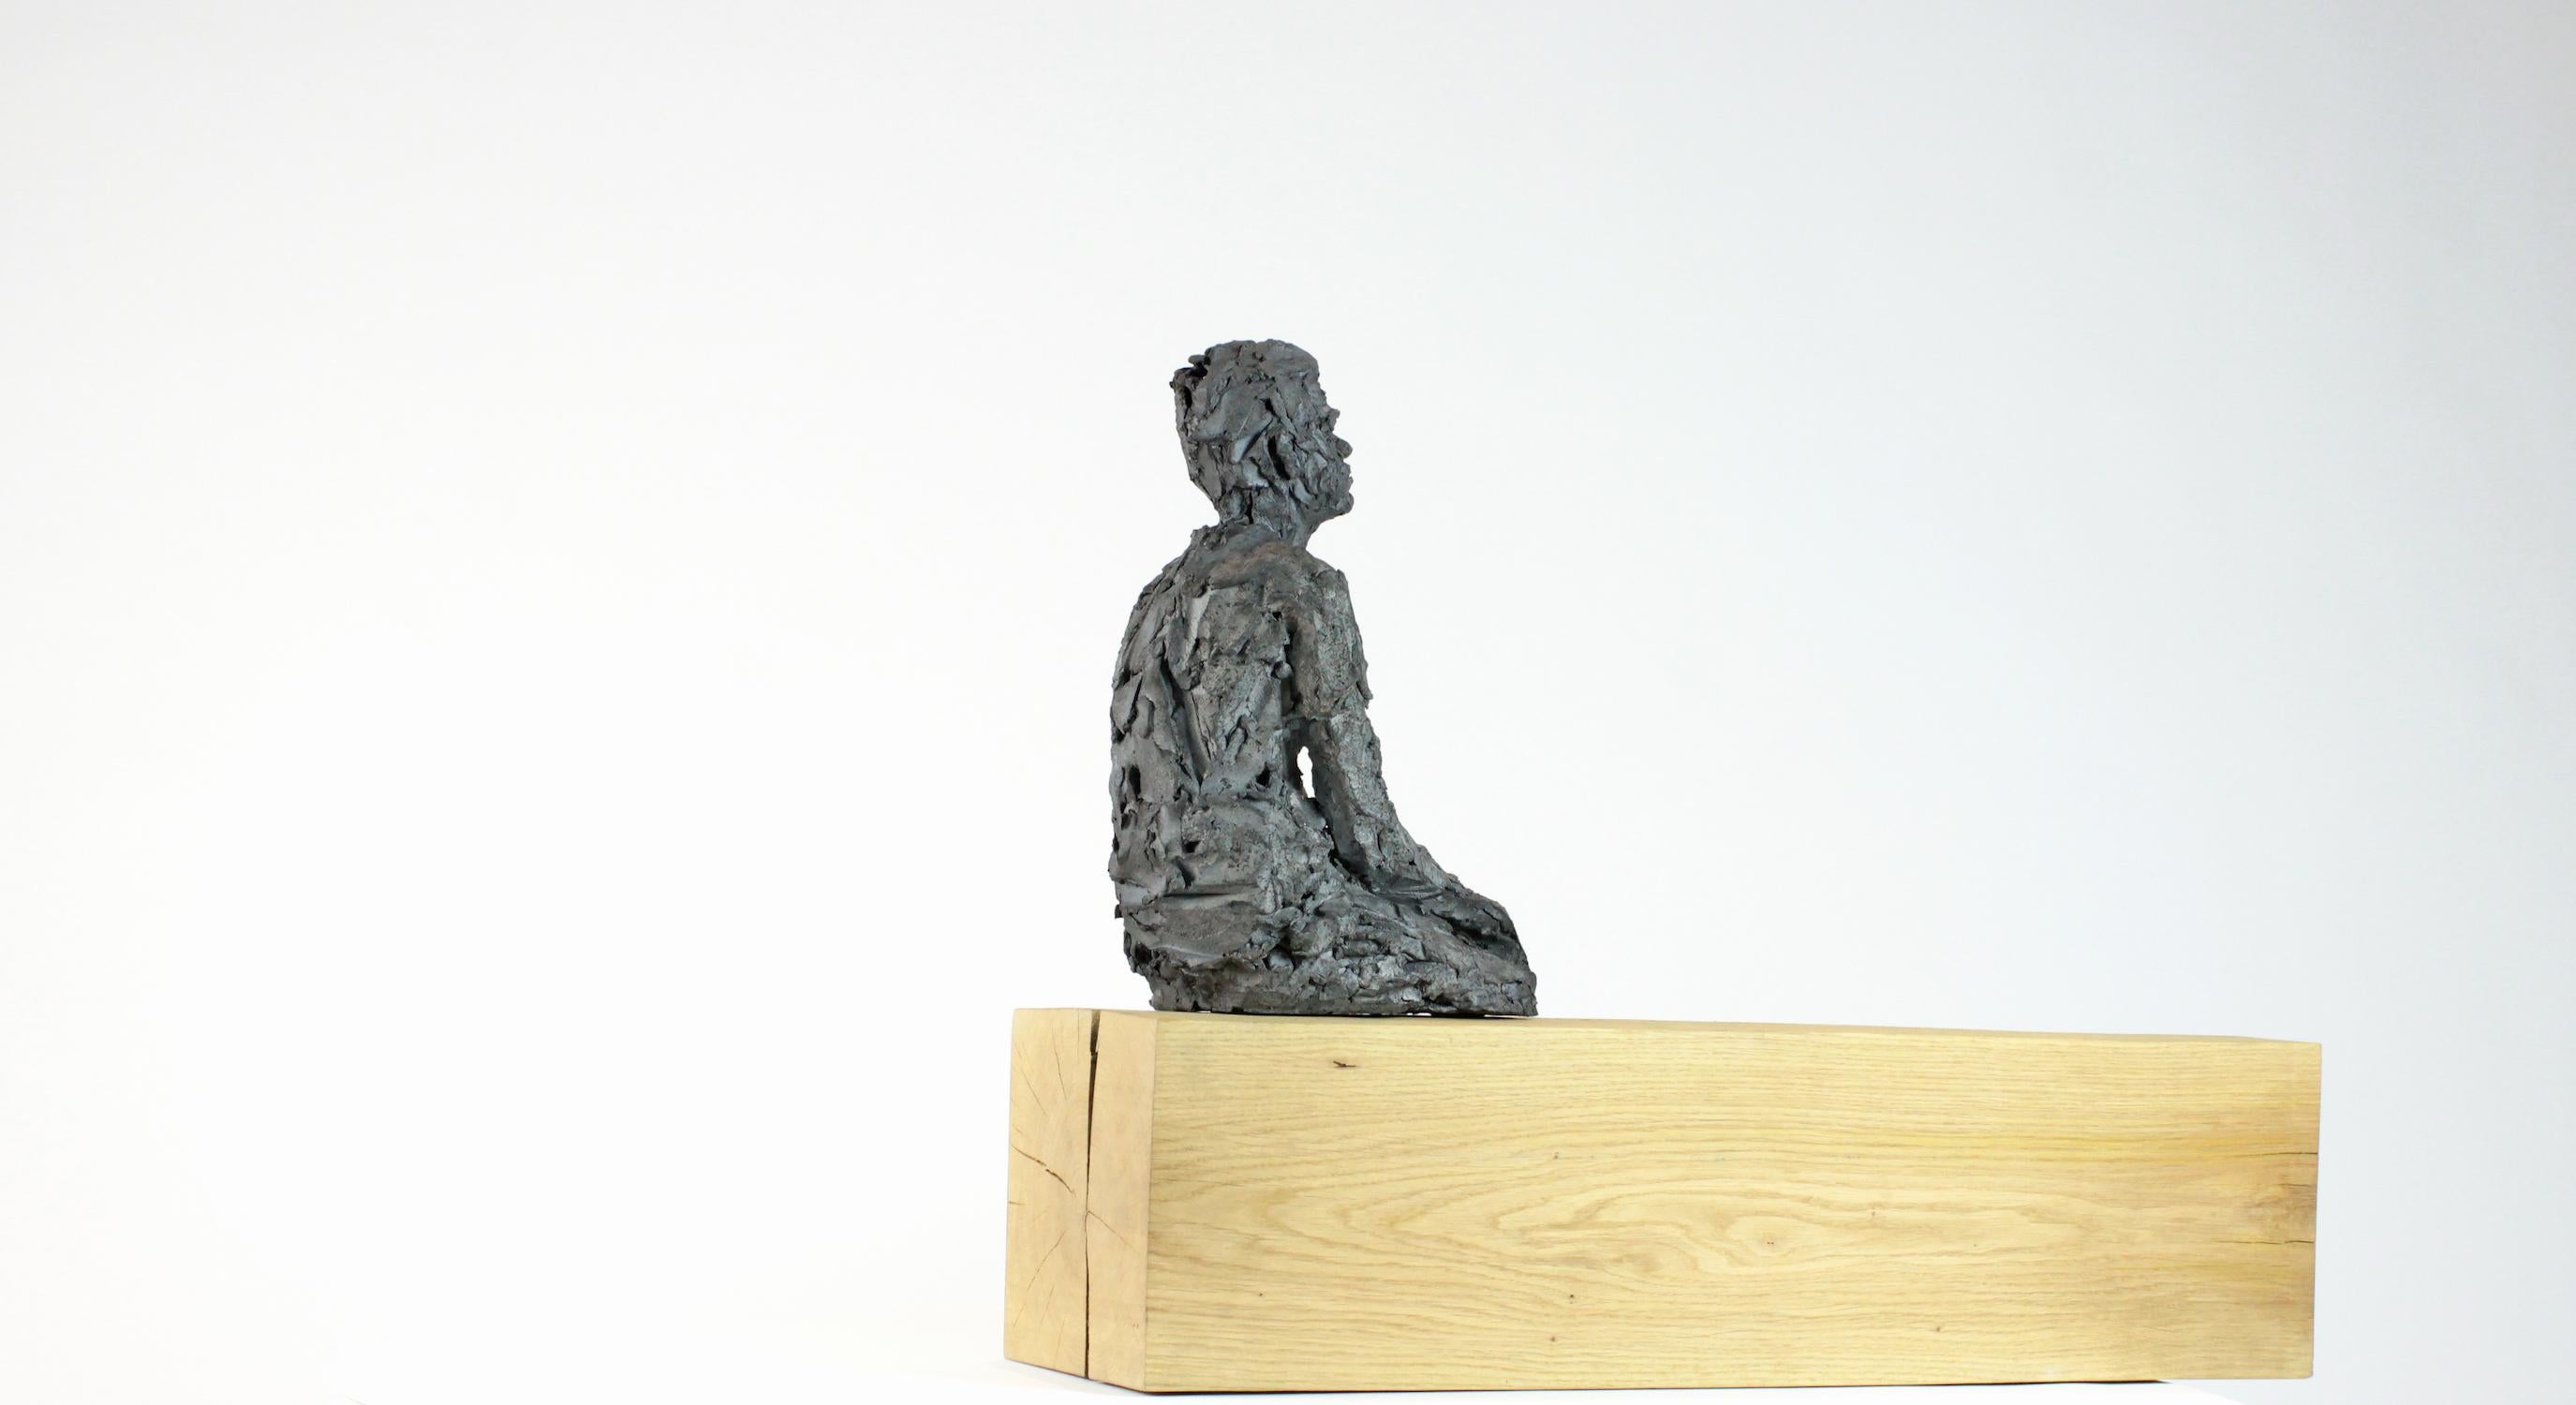 Vestibule des pommes (with Martin), Male Portrait, Ceramic Sculpture - Beige Figurative Sculpture by Cécile Raynal